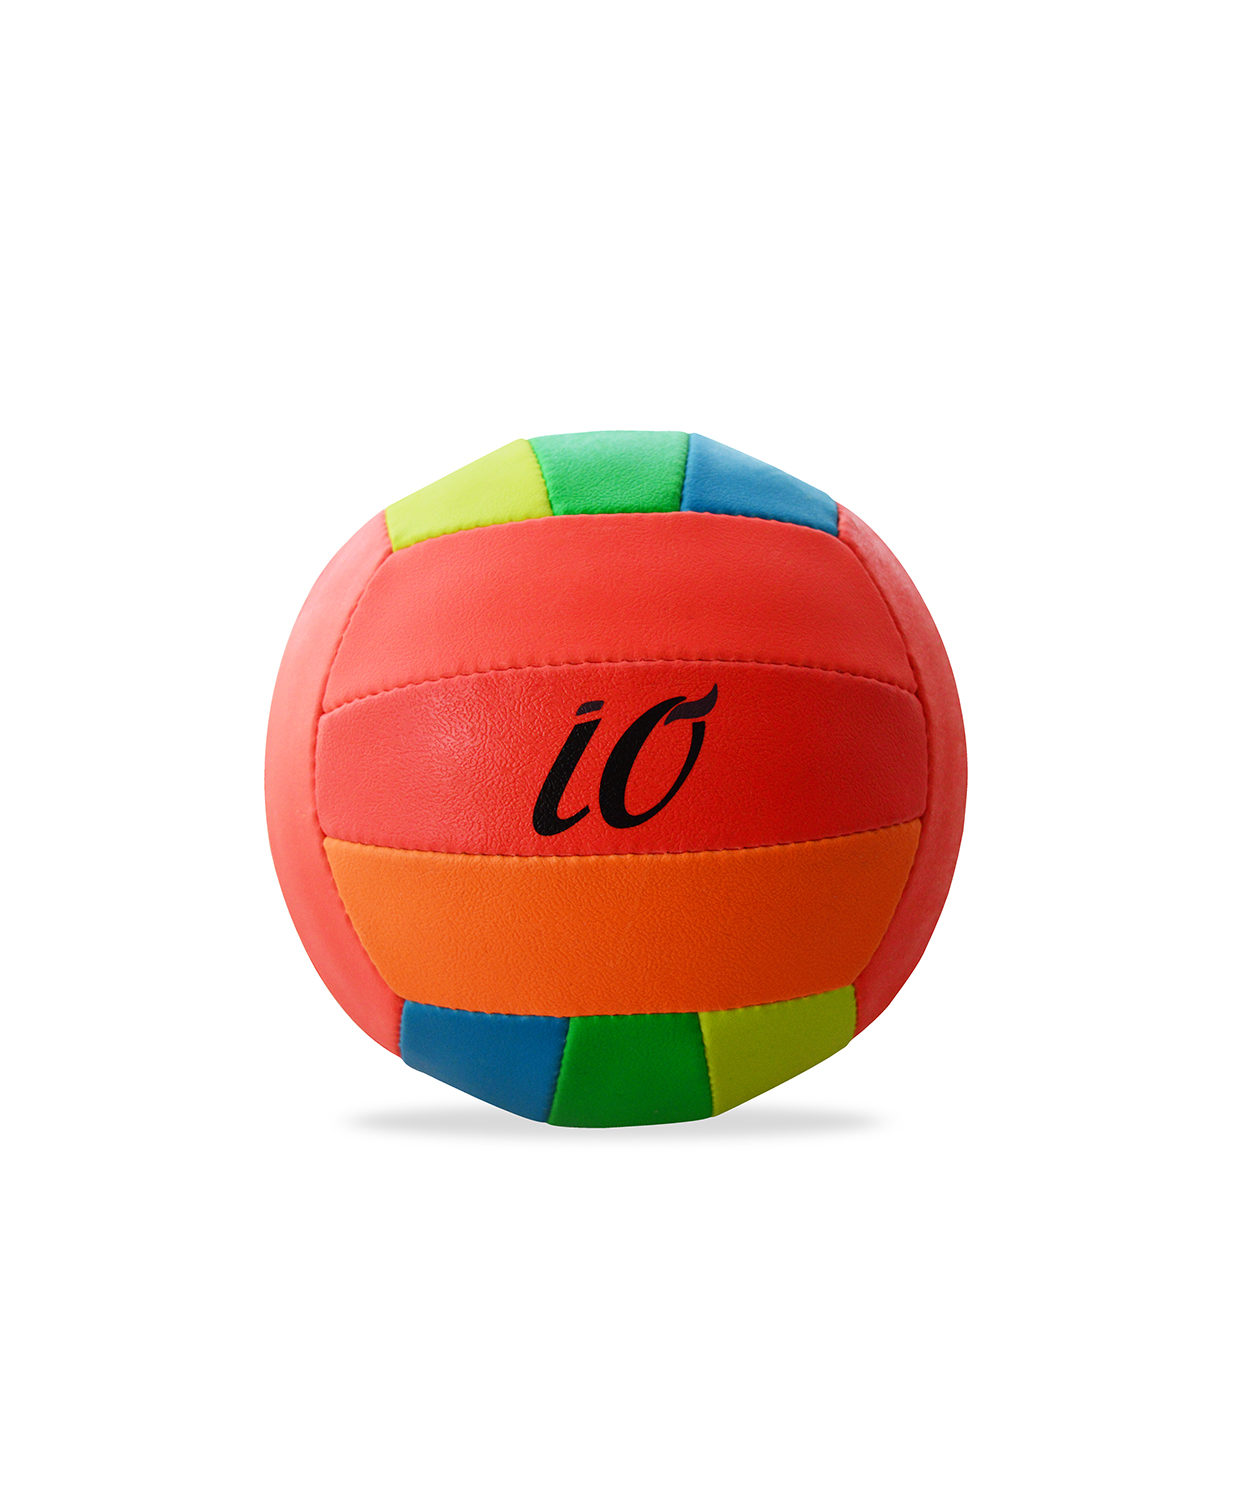 IO 6 Volleyball